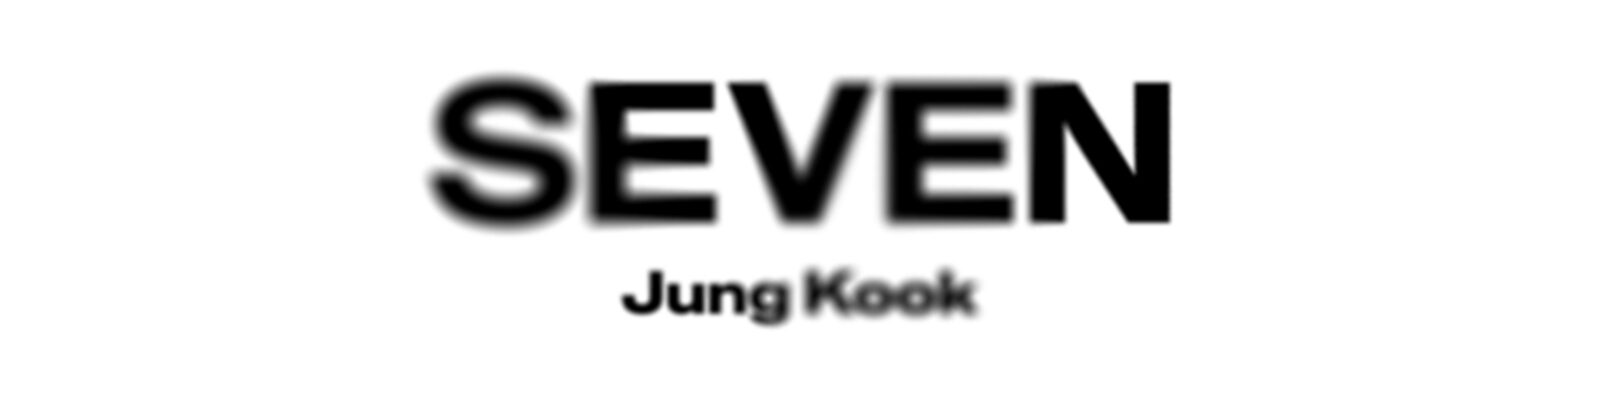 BTS JUNG KOOK、今月14日ソロシングル「Seven」発表